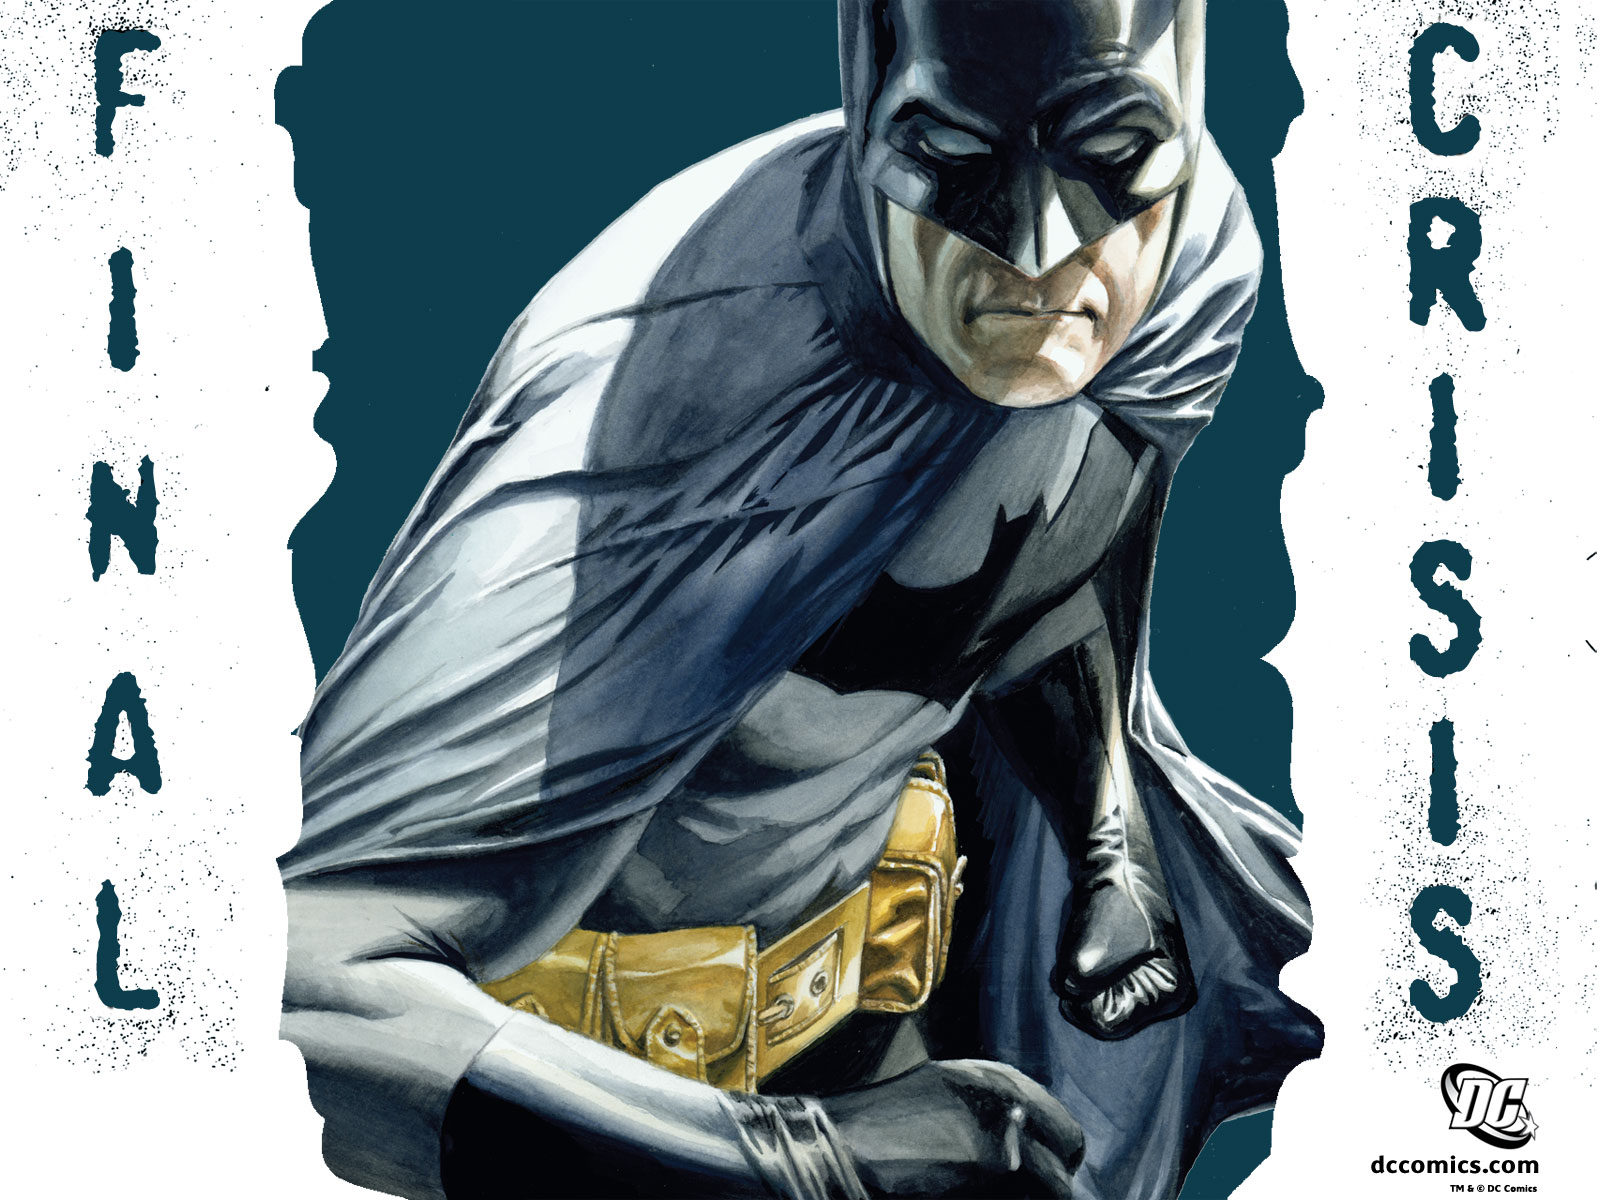 Comics Batman Wallpaper